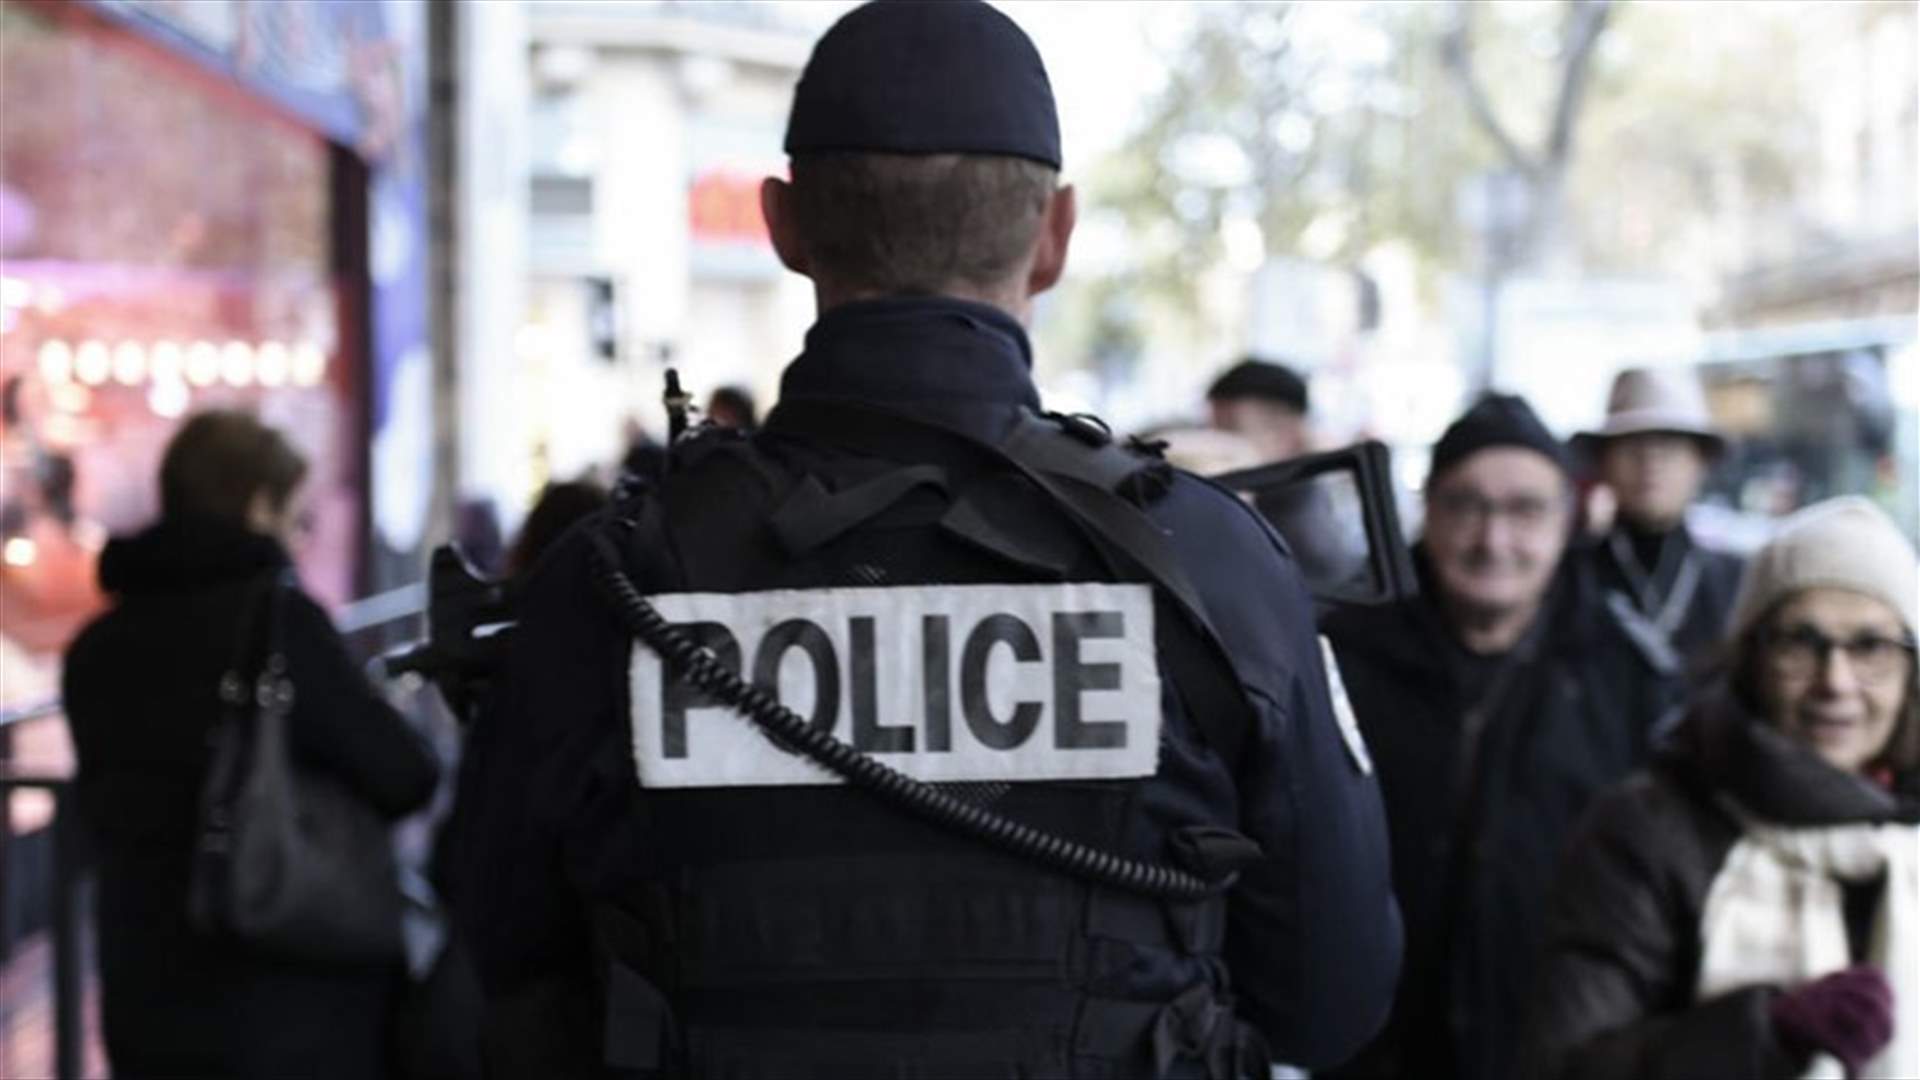 السلطات الفرنسية تأمر بإغلاق مسجد قرب باريس